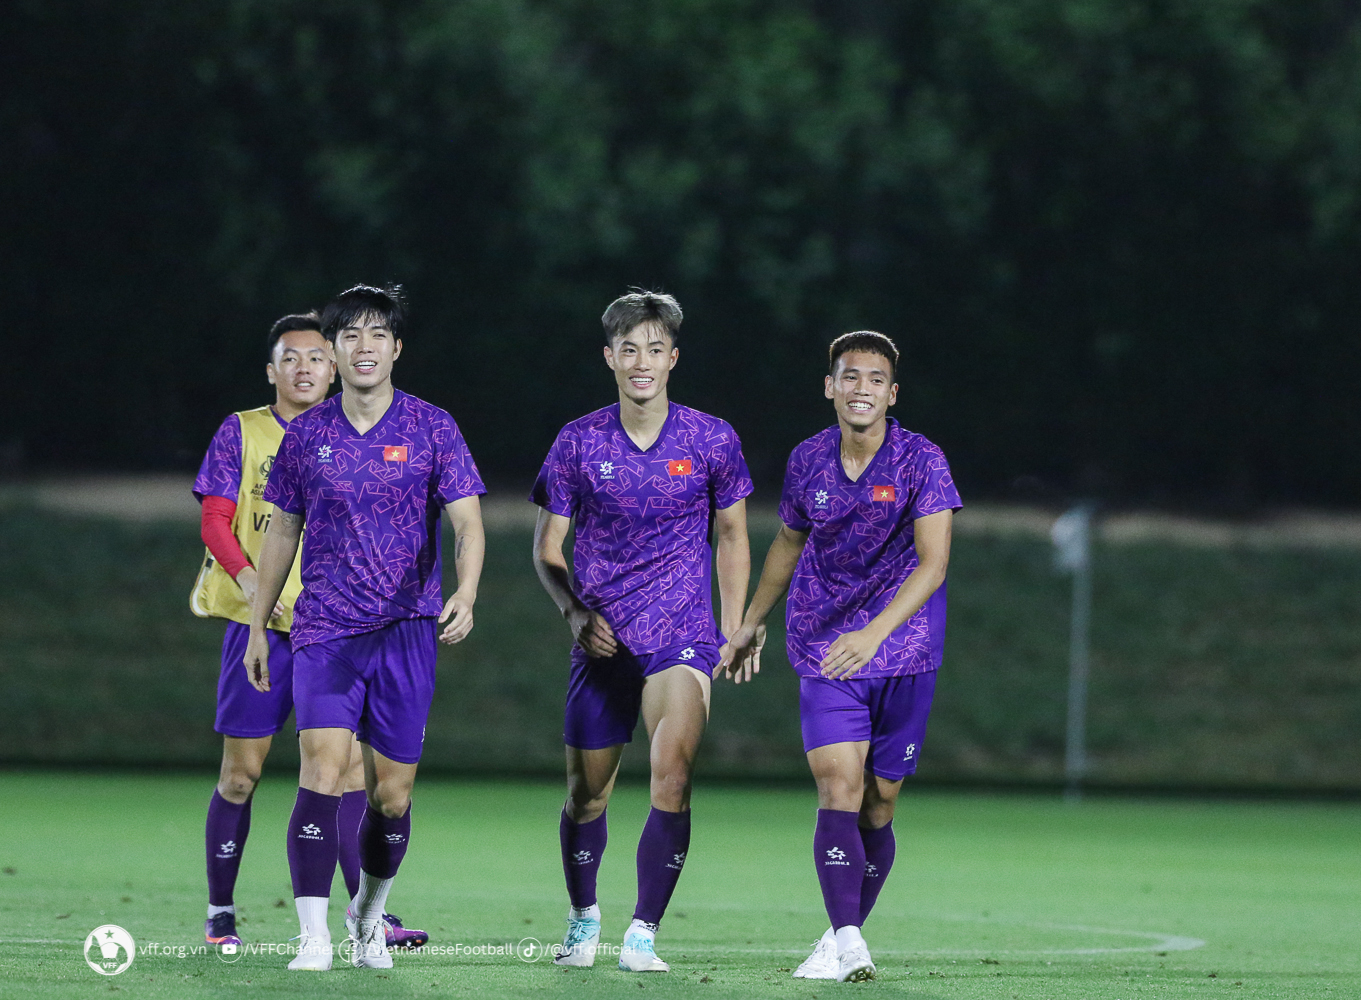 U23 Việt Nam trước cơ hội lập kỷ lục ở giải châu Á - ảnh 1